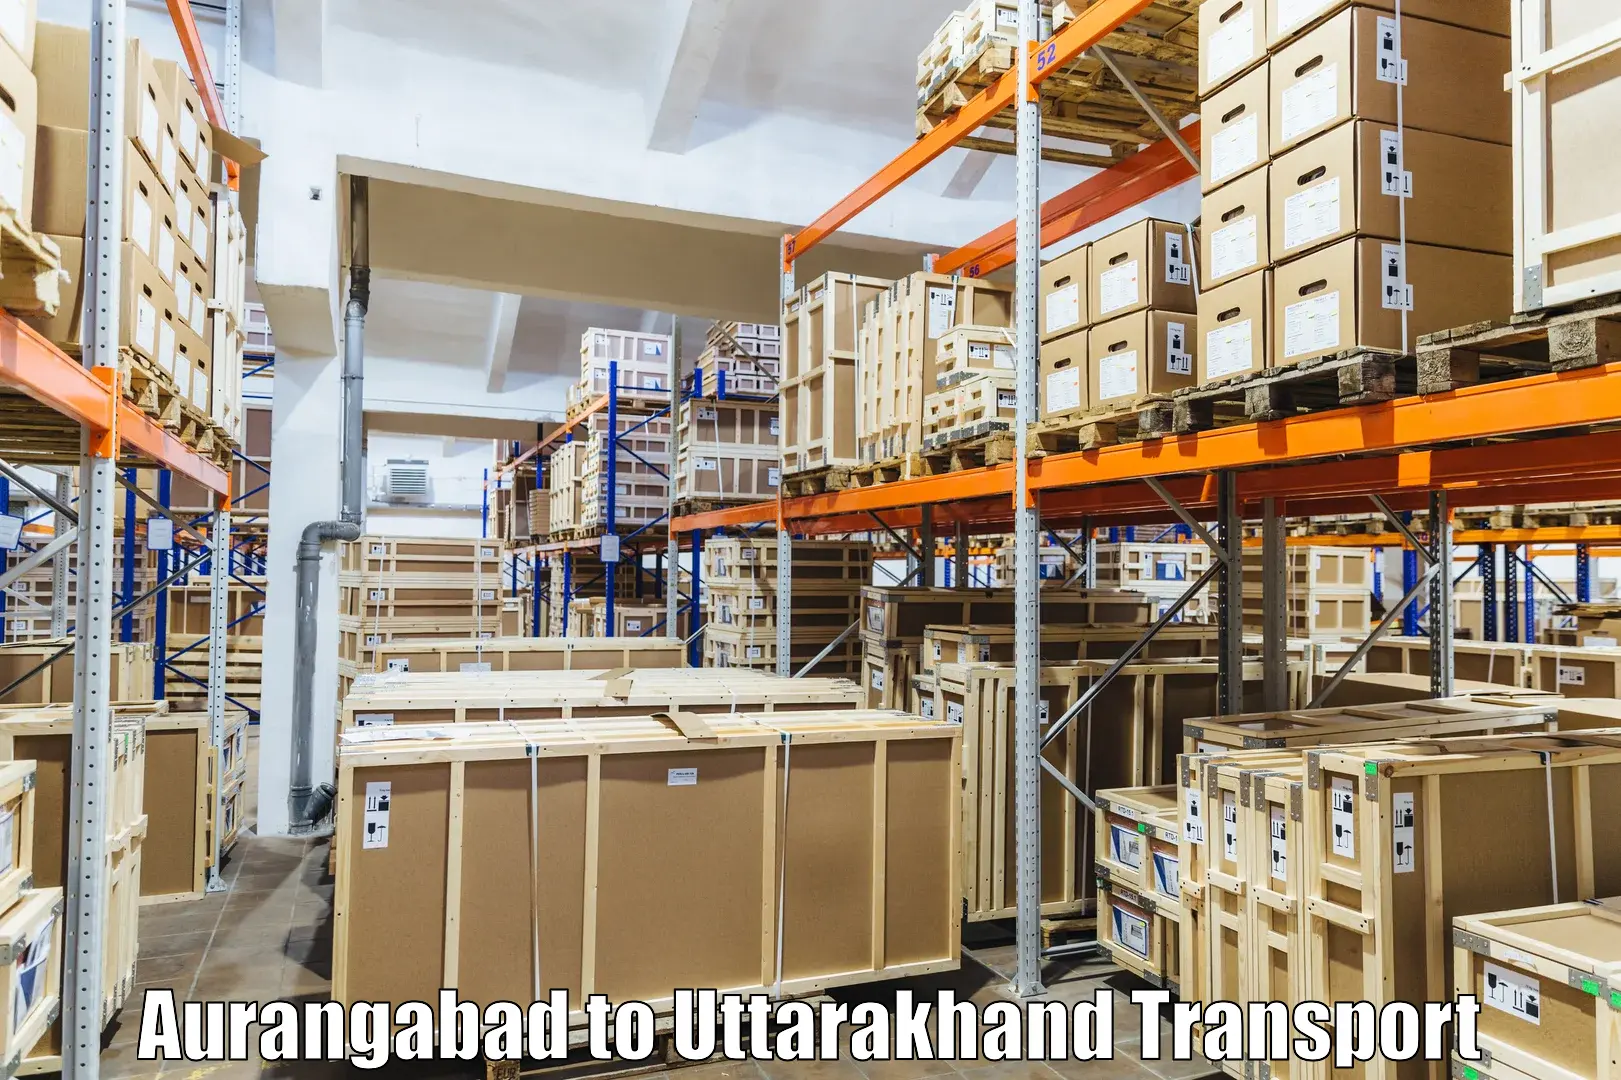 India truck logistics services Aurangabad to Tehri